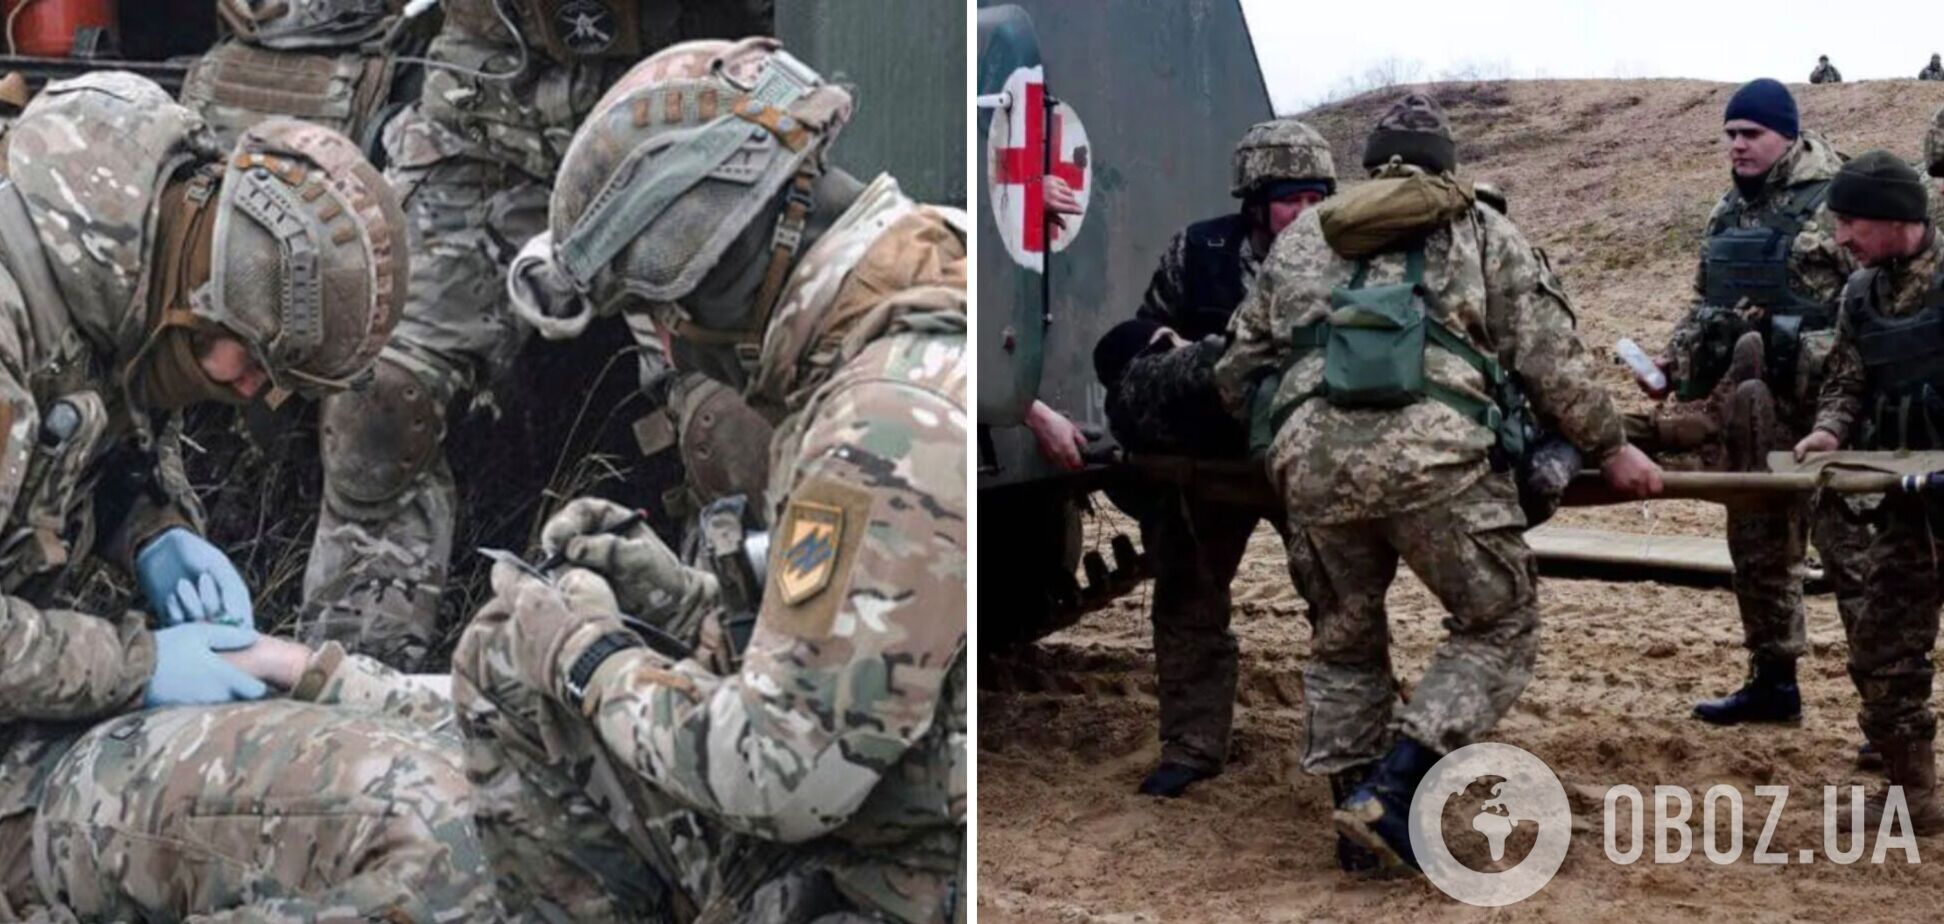 'Братику, тримайся':  українські воїни показали кадри порятунку пораненого побратима  на передовій. Відео